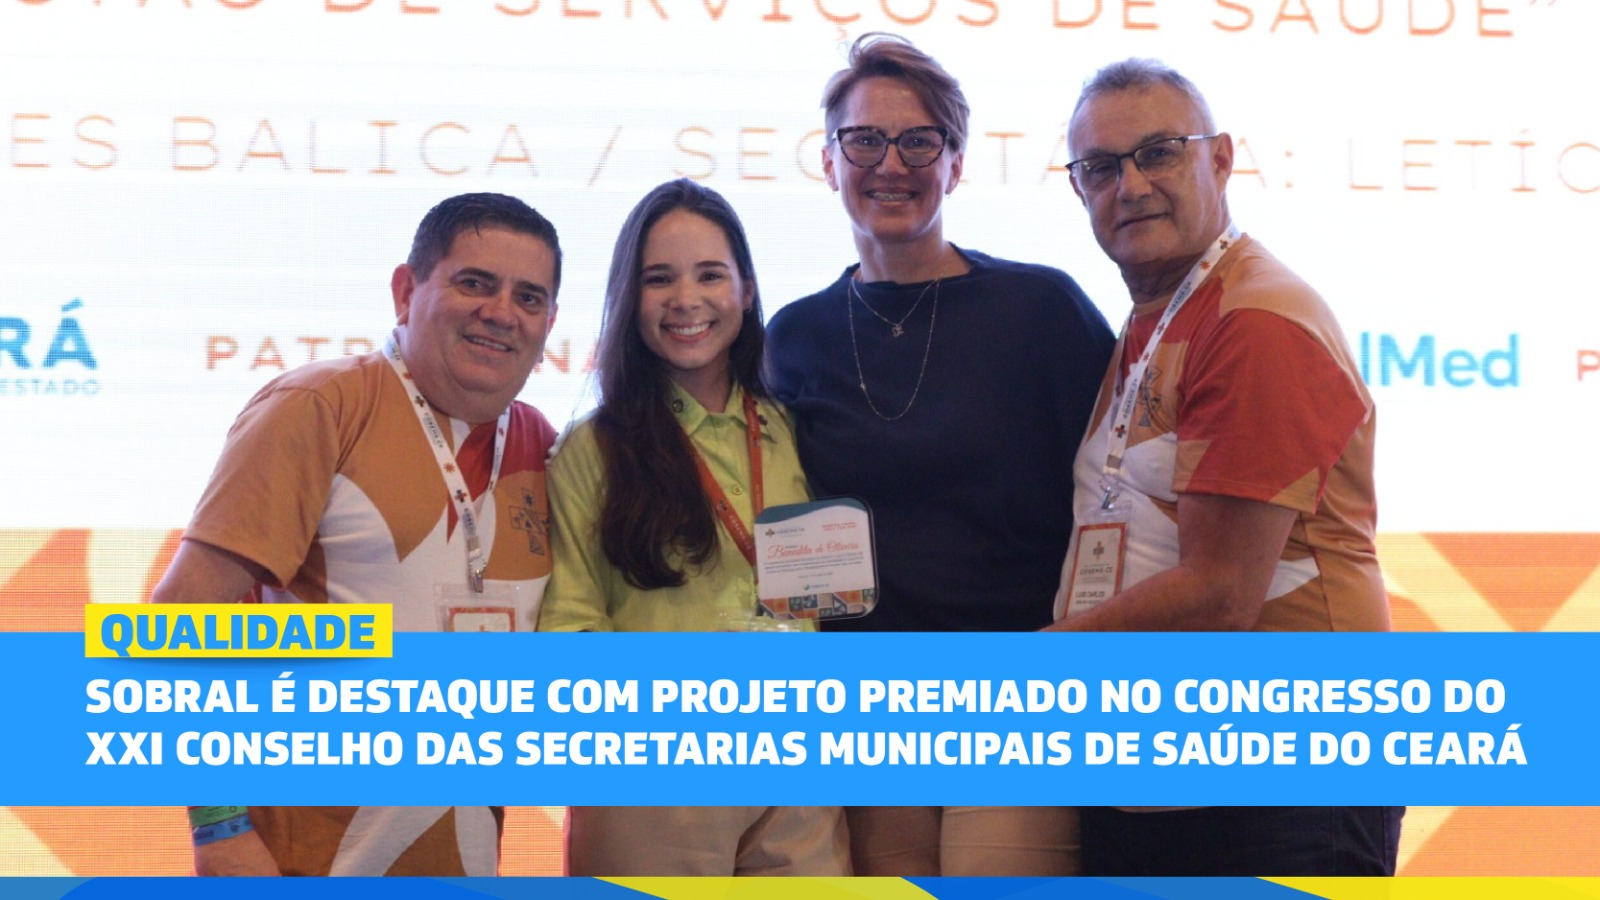 Sobral é destaque com projeto premiado no congresso do Conselho das Secretari...